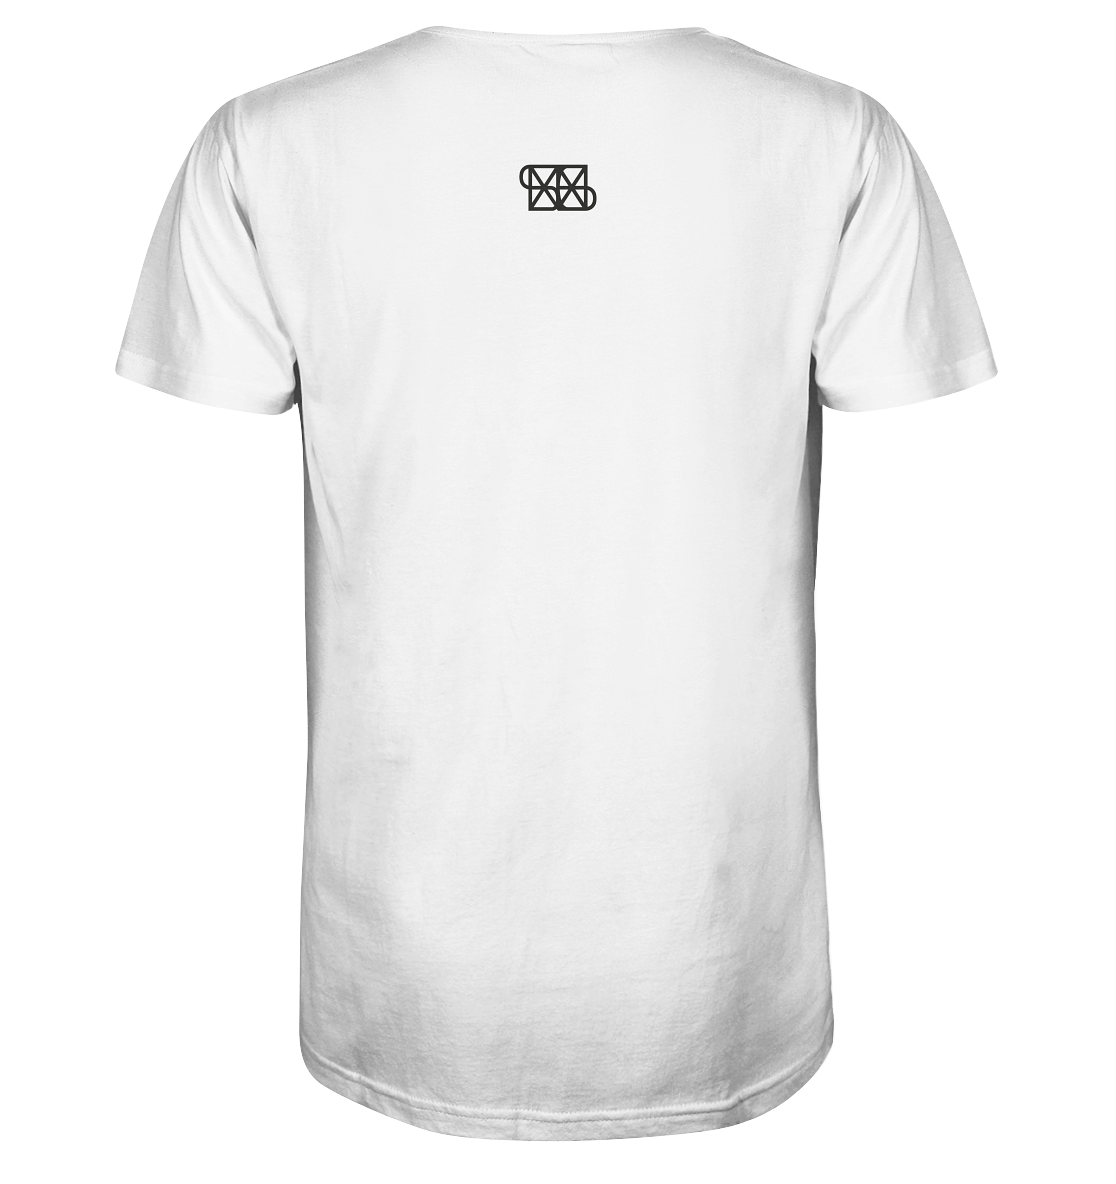 Bar black - Organic Basic Shirt